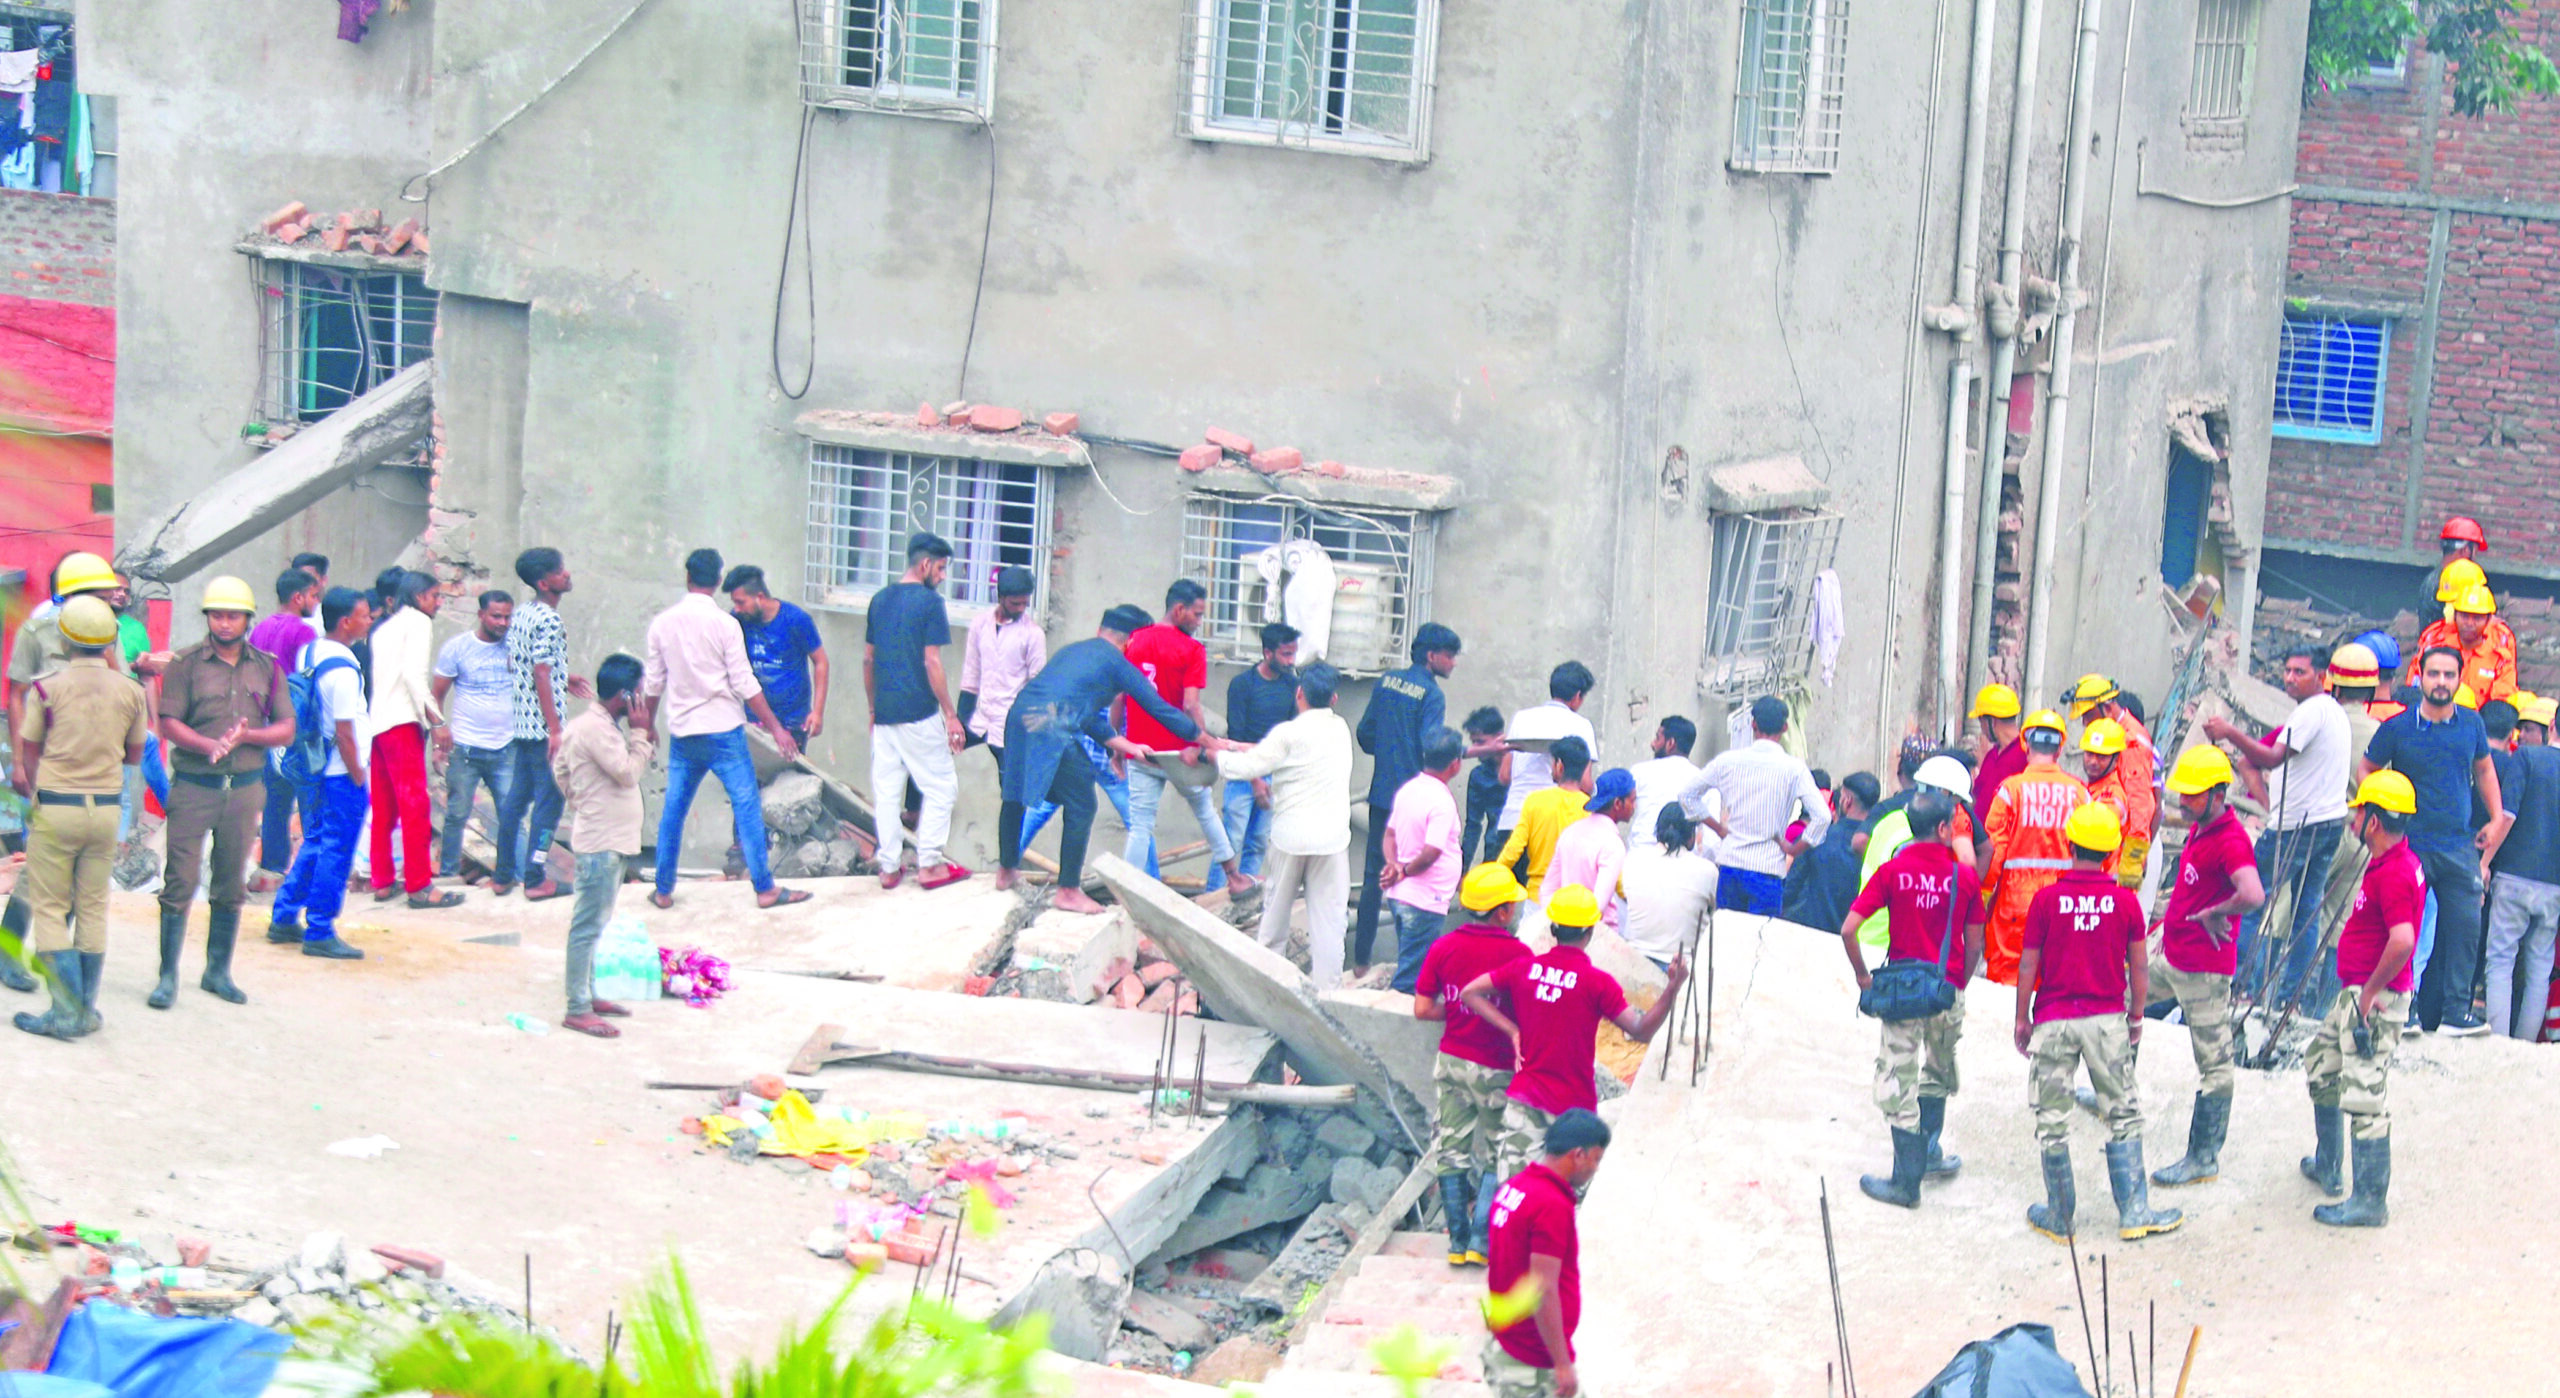 Parties bicker as 8 people die in Kolkata house collapse